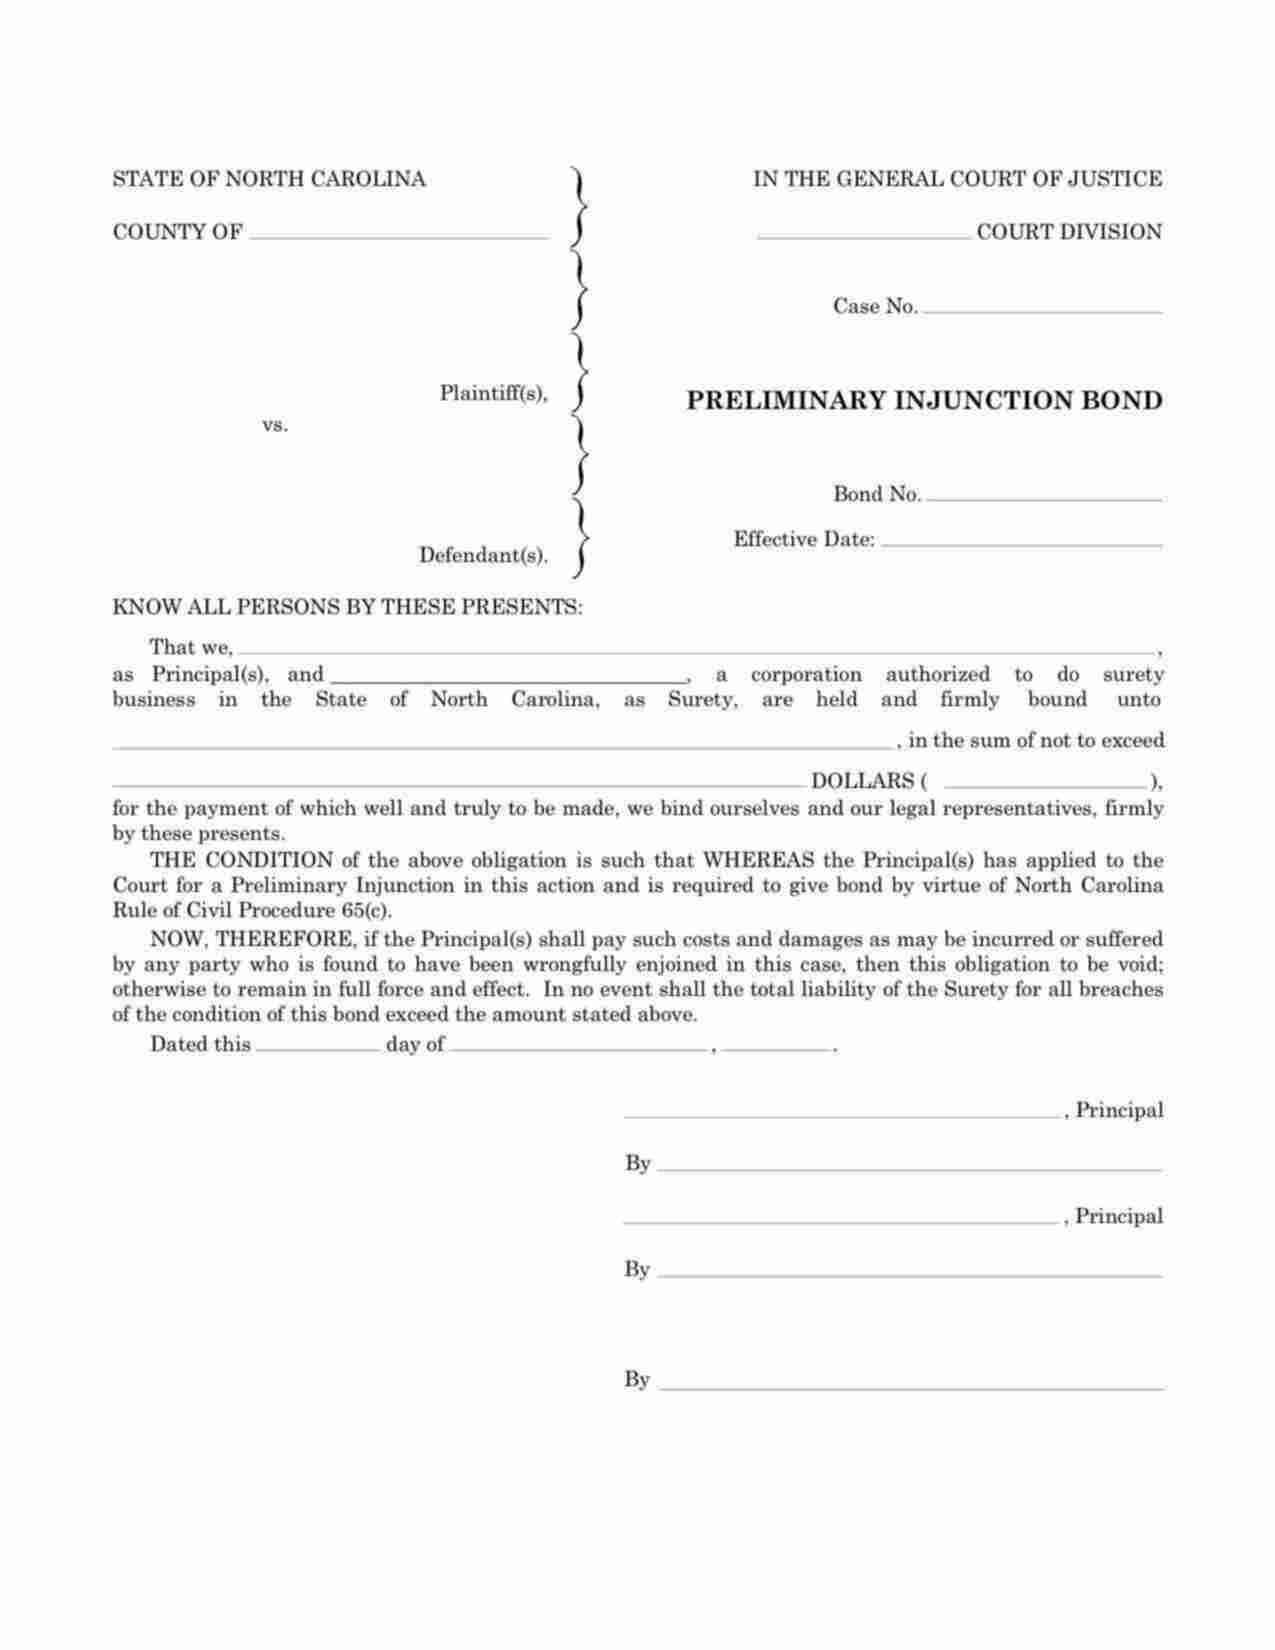 North Carolina Preliminary Injunction Bond Form